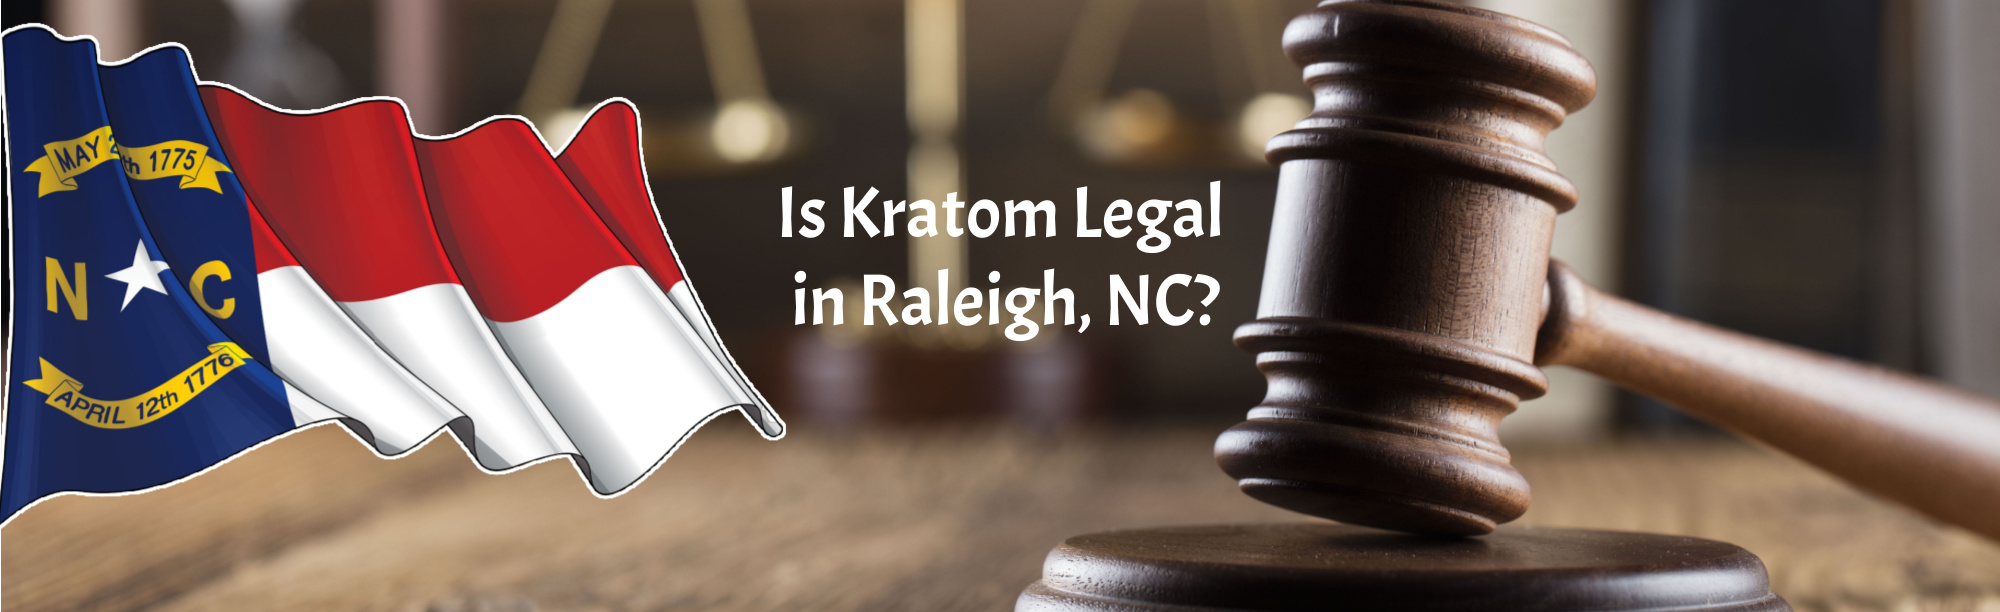 image of is kratom legal in raleigh nc